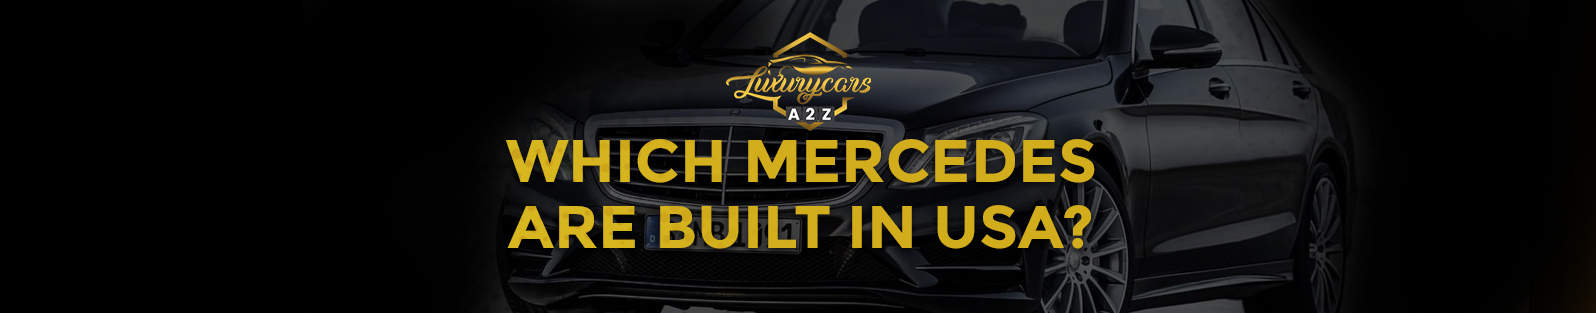 Quelles Mercedes sont construites aux États-Unis ?